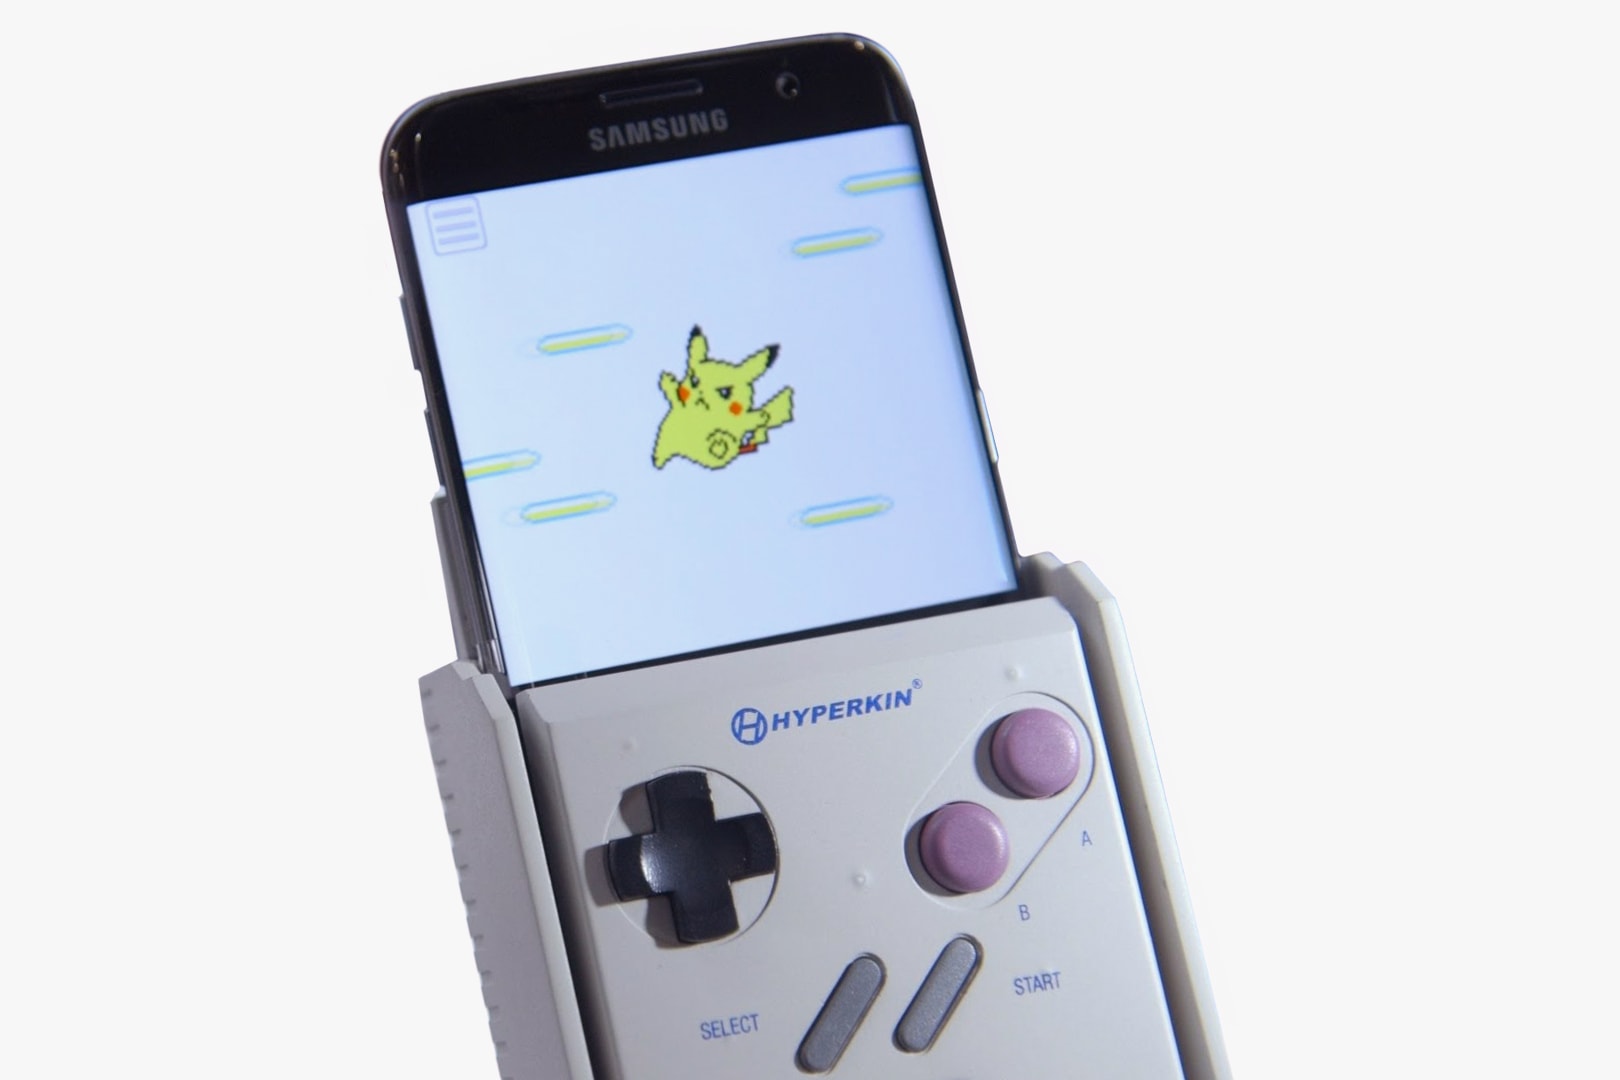 SamsungSmartBoy Game Boy Phone Add-On